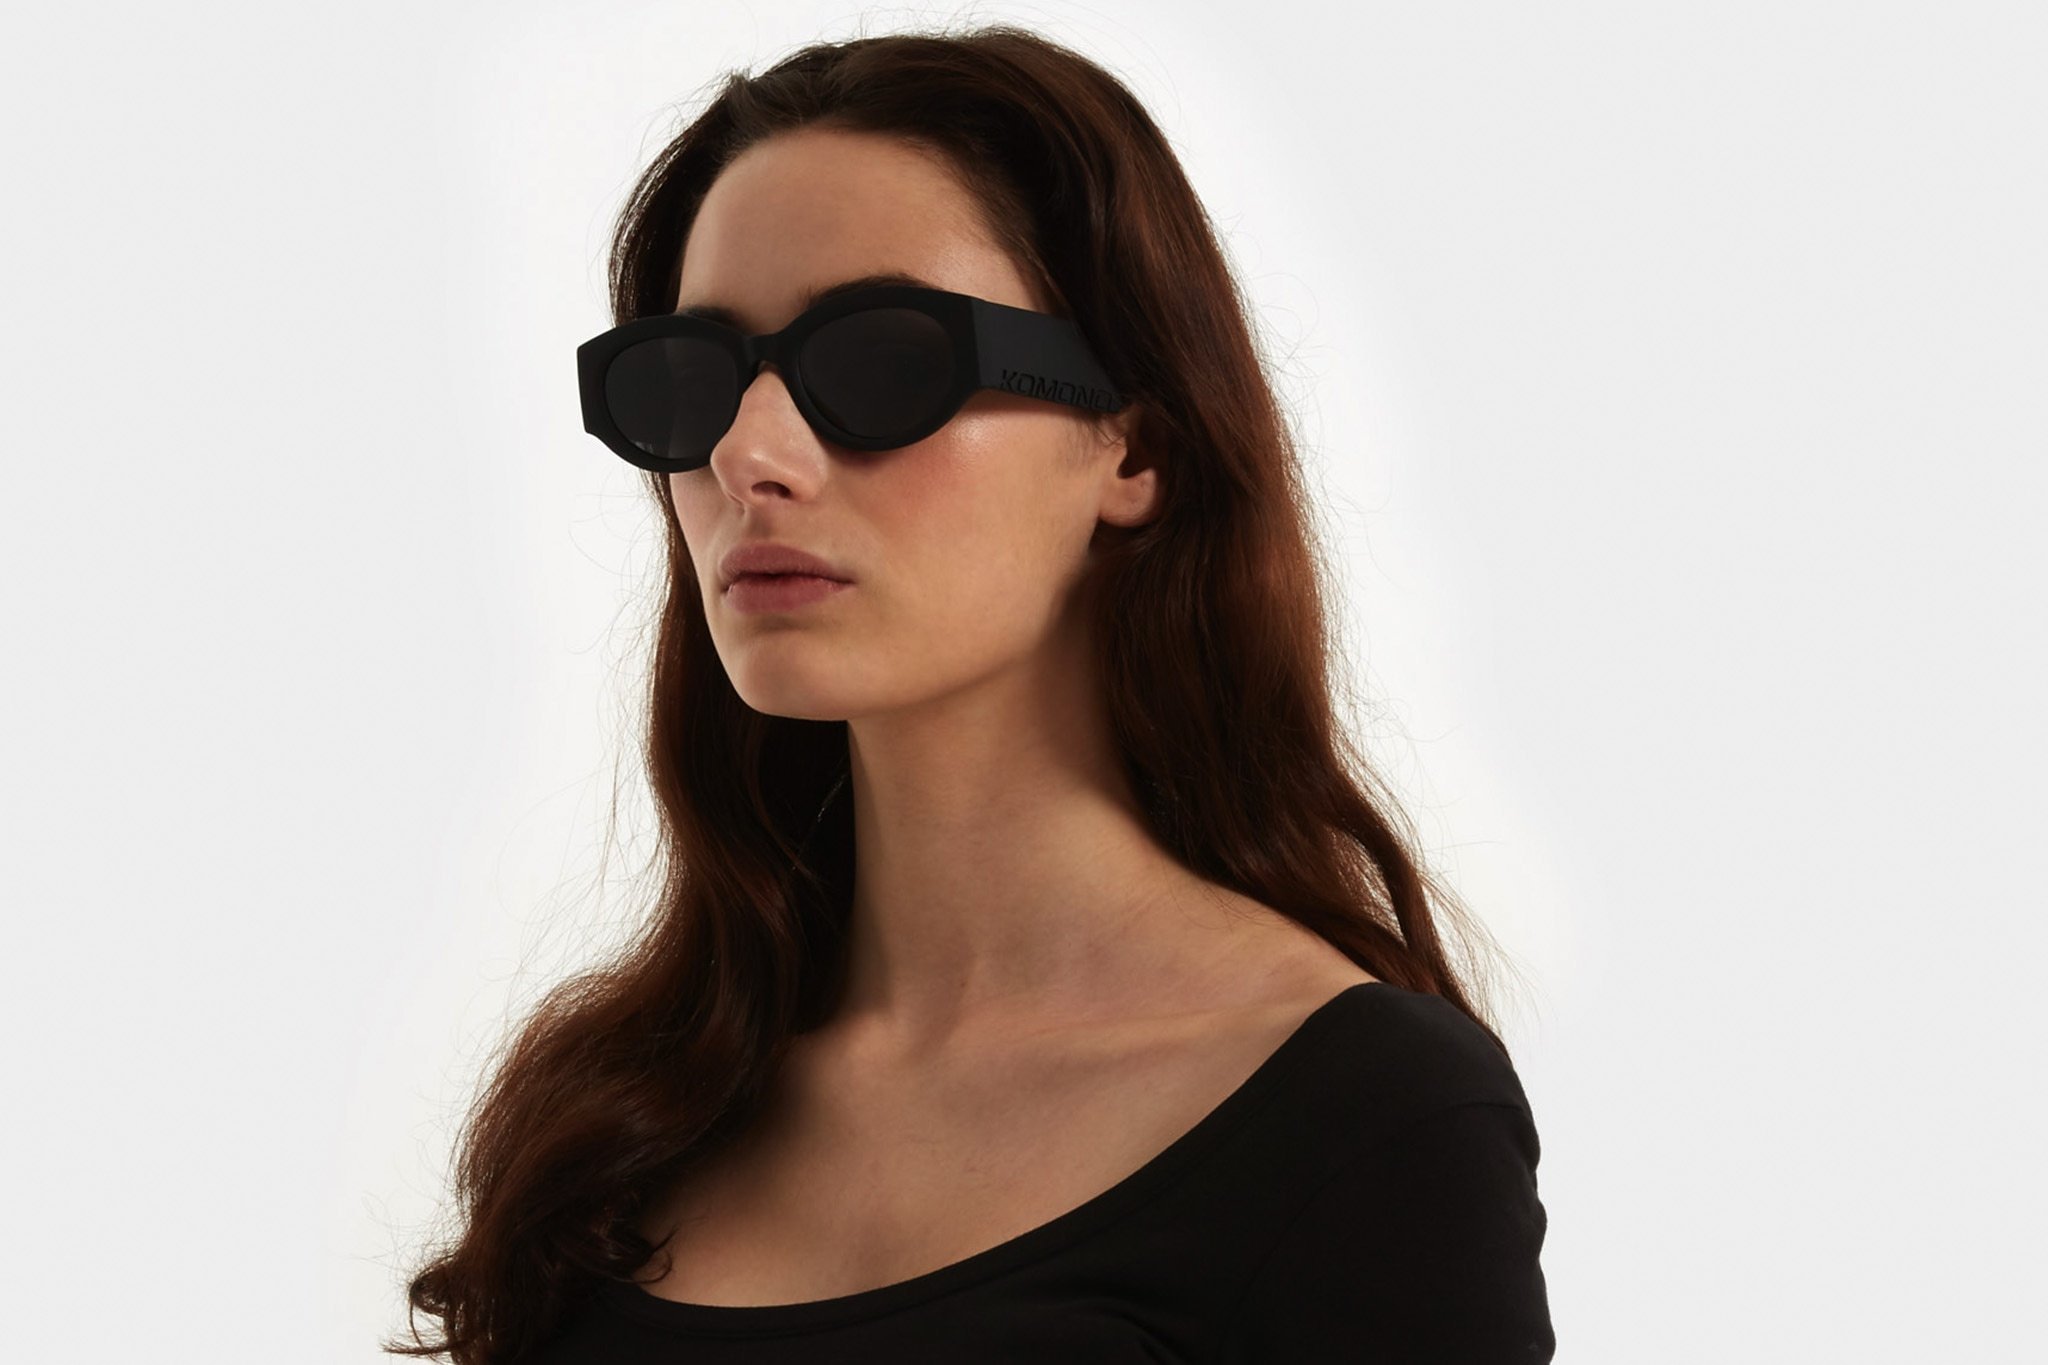 Κοκάλινα unisex γυαλιά ηλίου Dax σε μαύρο matte σκελετό και επίπεδους γκρι φακούς της εταιρίας Komono για όλα τα πρόσωπα.